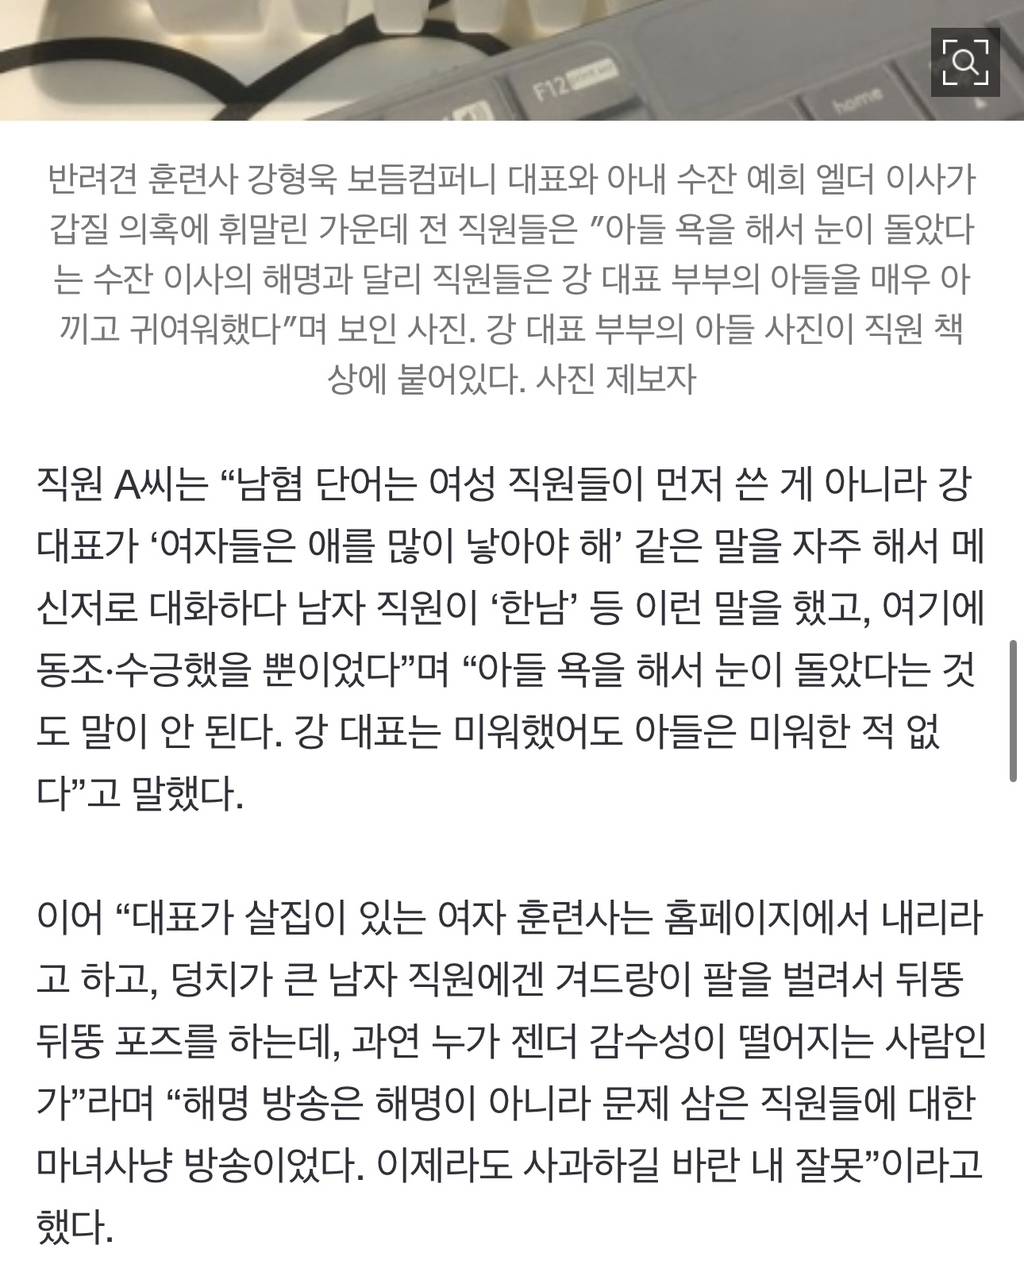 [단독] "CCTV 9대, 현관엔 없었다"…강형욱 해명에 PPT 반박 | 인스티즈